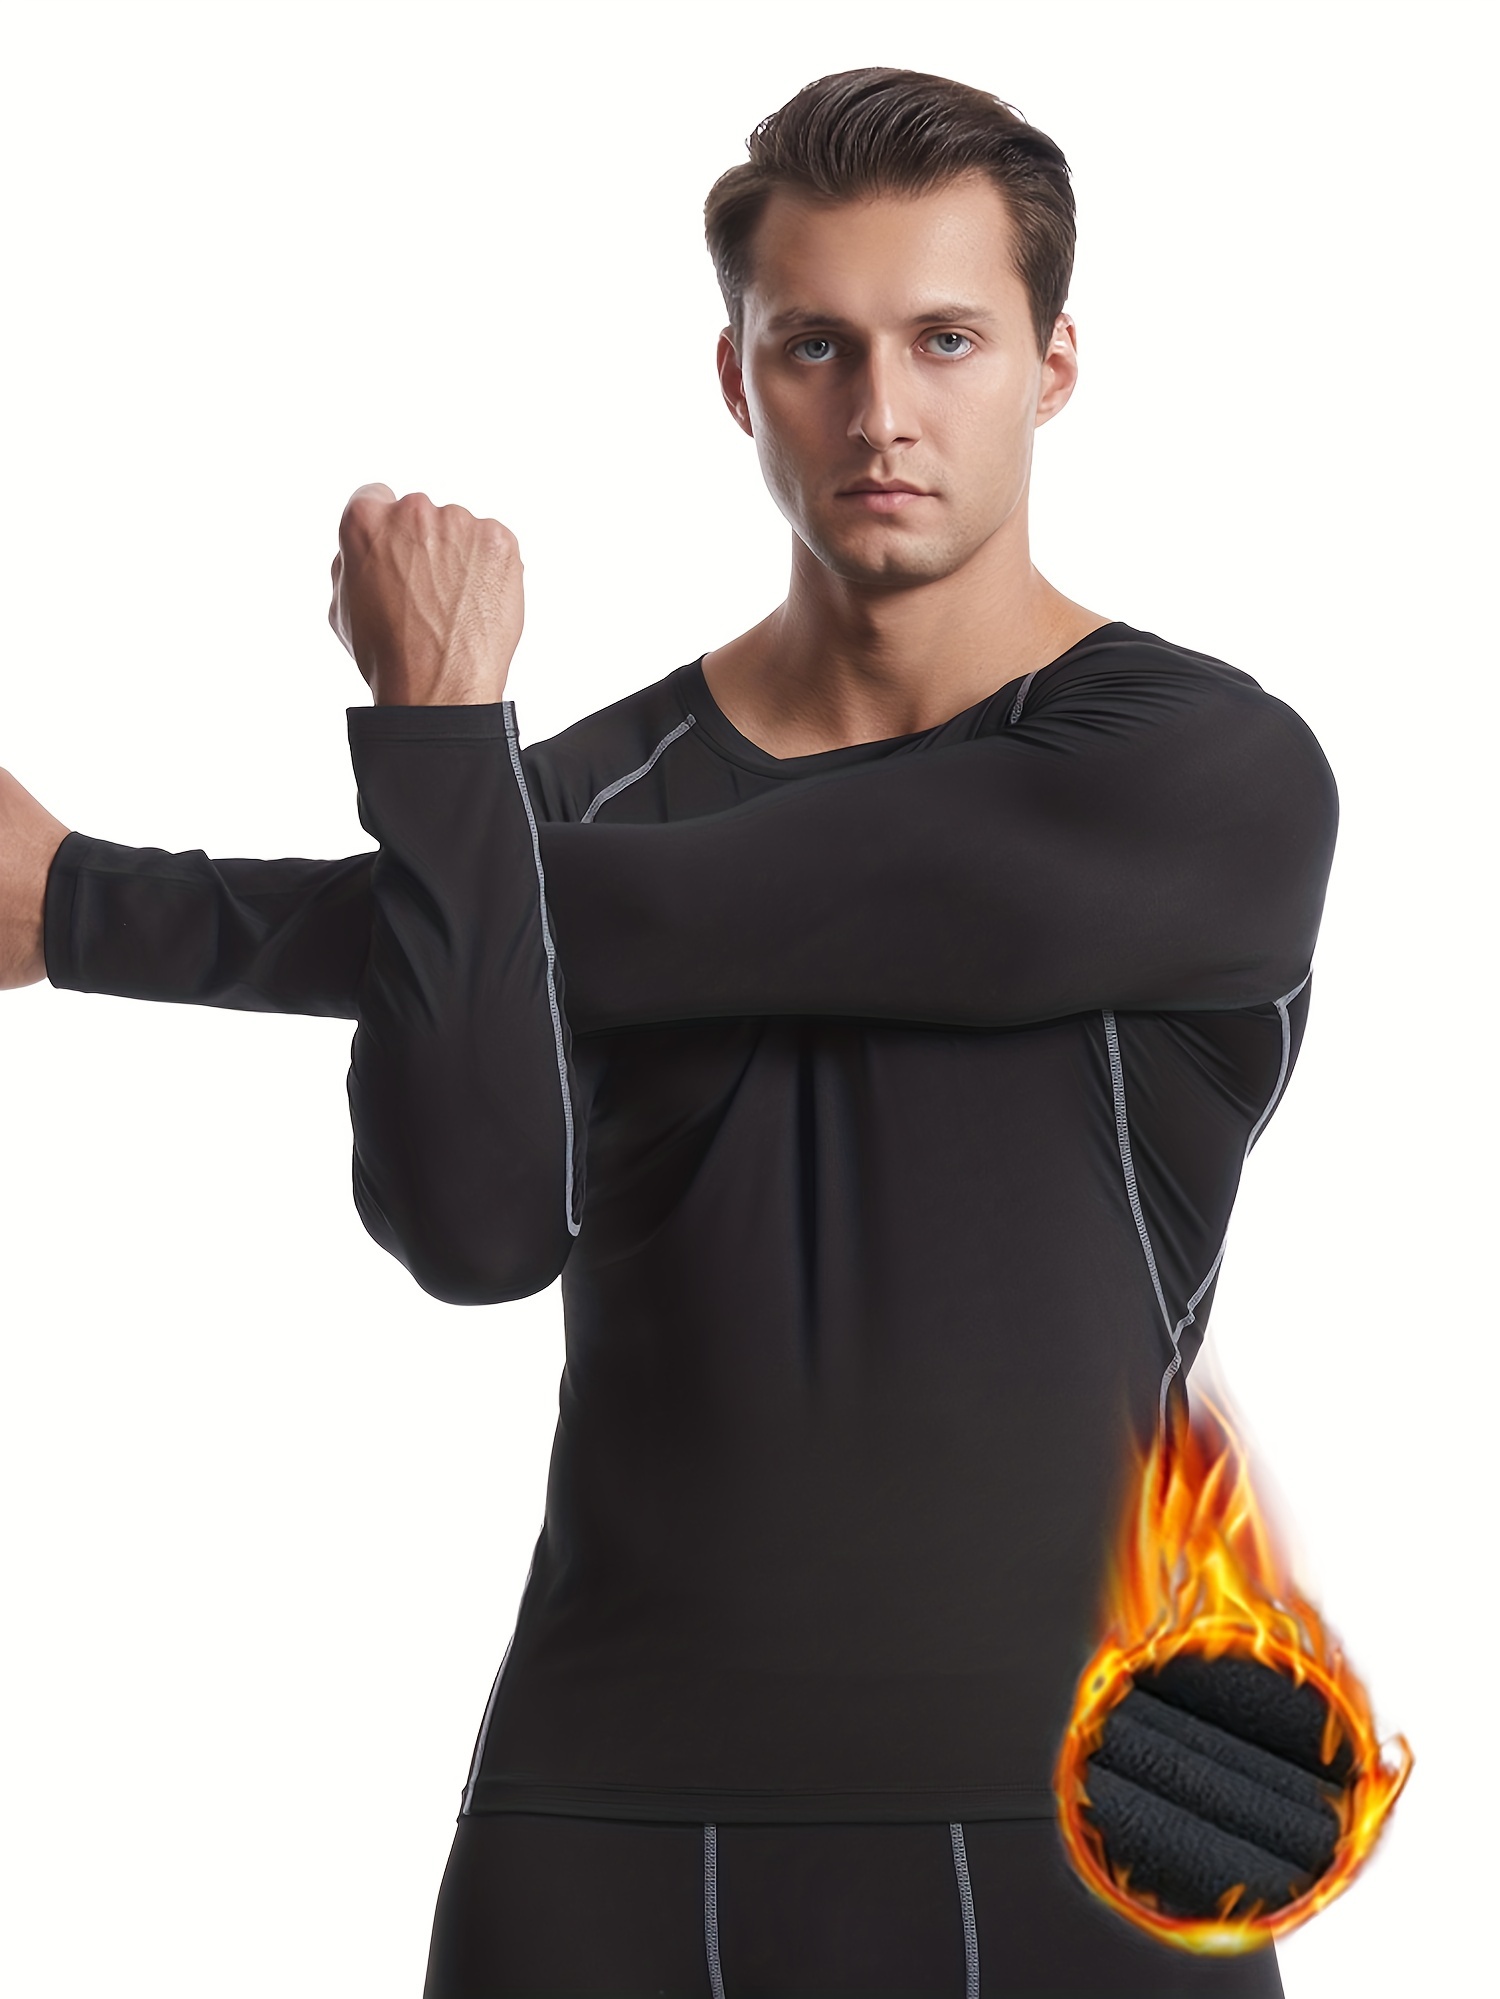 Thermal Medium Warmth Bodysuit - Underwear T shirt 